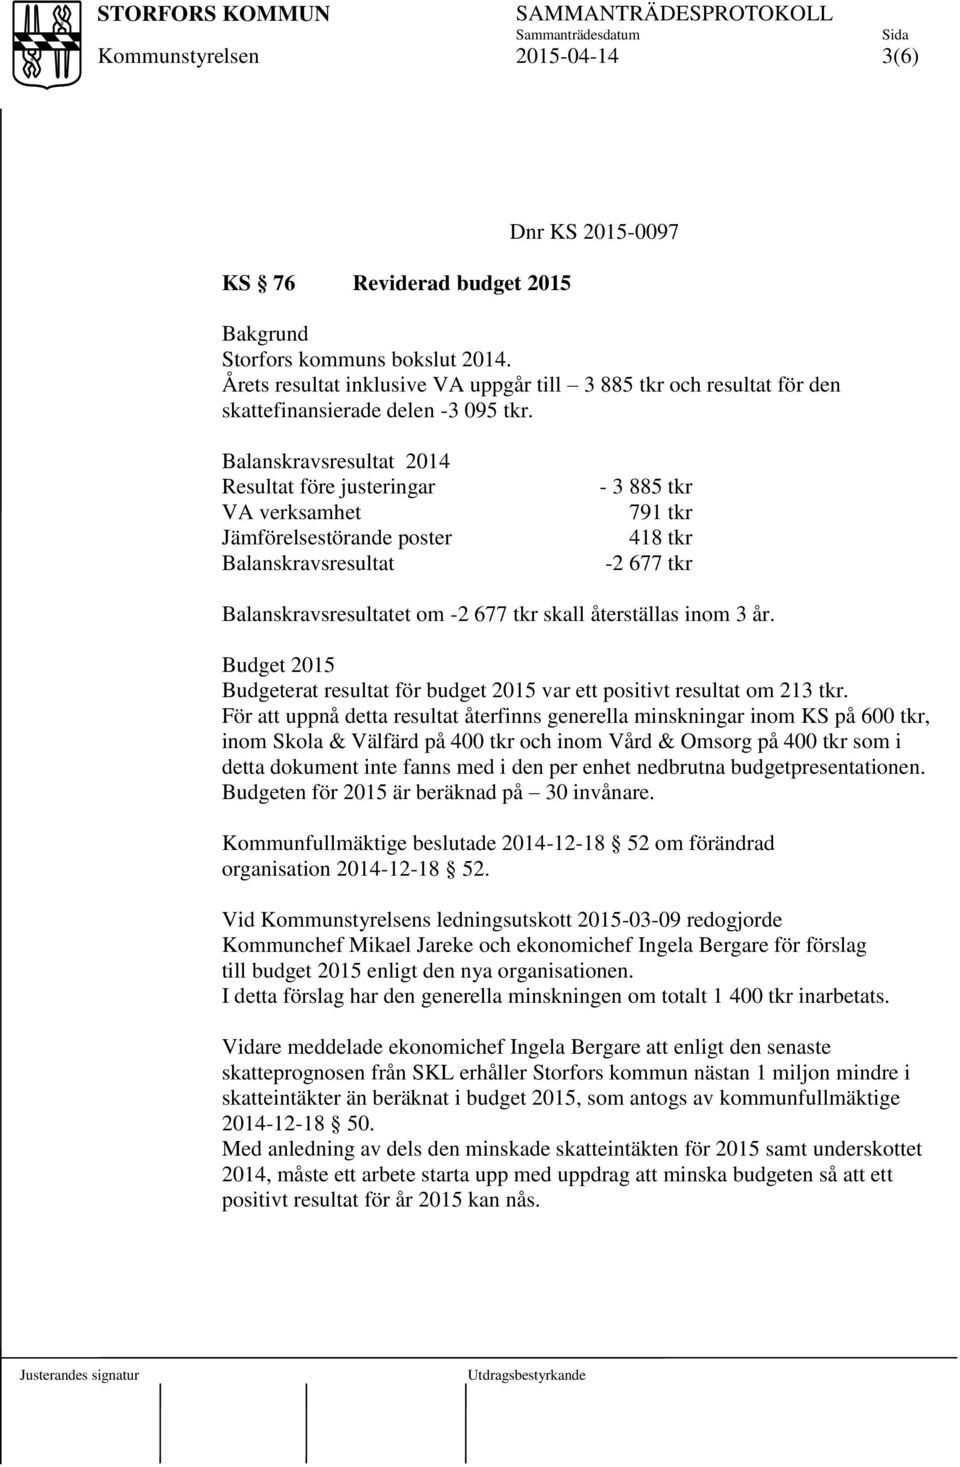 återställas inom 3 år. Budget 2015 Budgeterat resultat för budget 2015 var ett positivt resultat om 213 tkr.